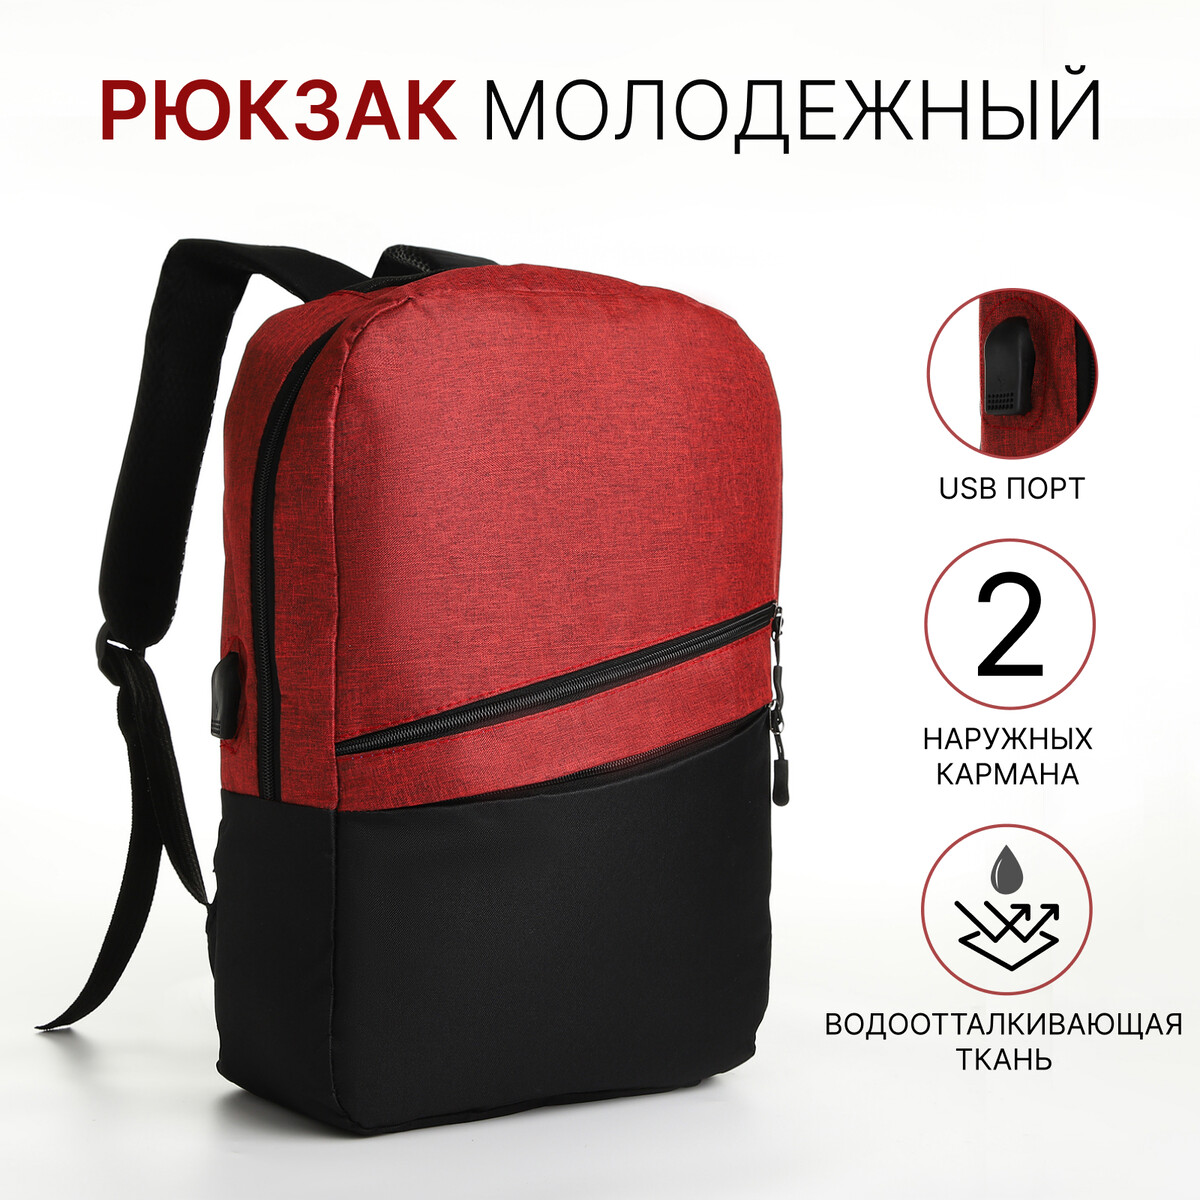 Рюкзак городской с usb из текстиля на молнии, 2 кармана, цвет черный/красный рюкзак городской с usb зарядкой sebar